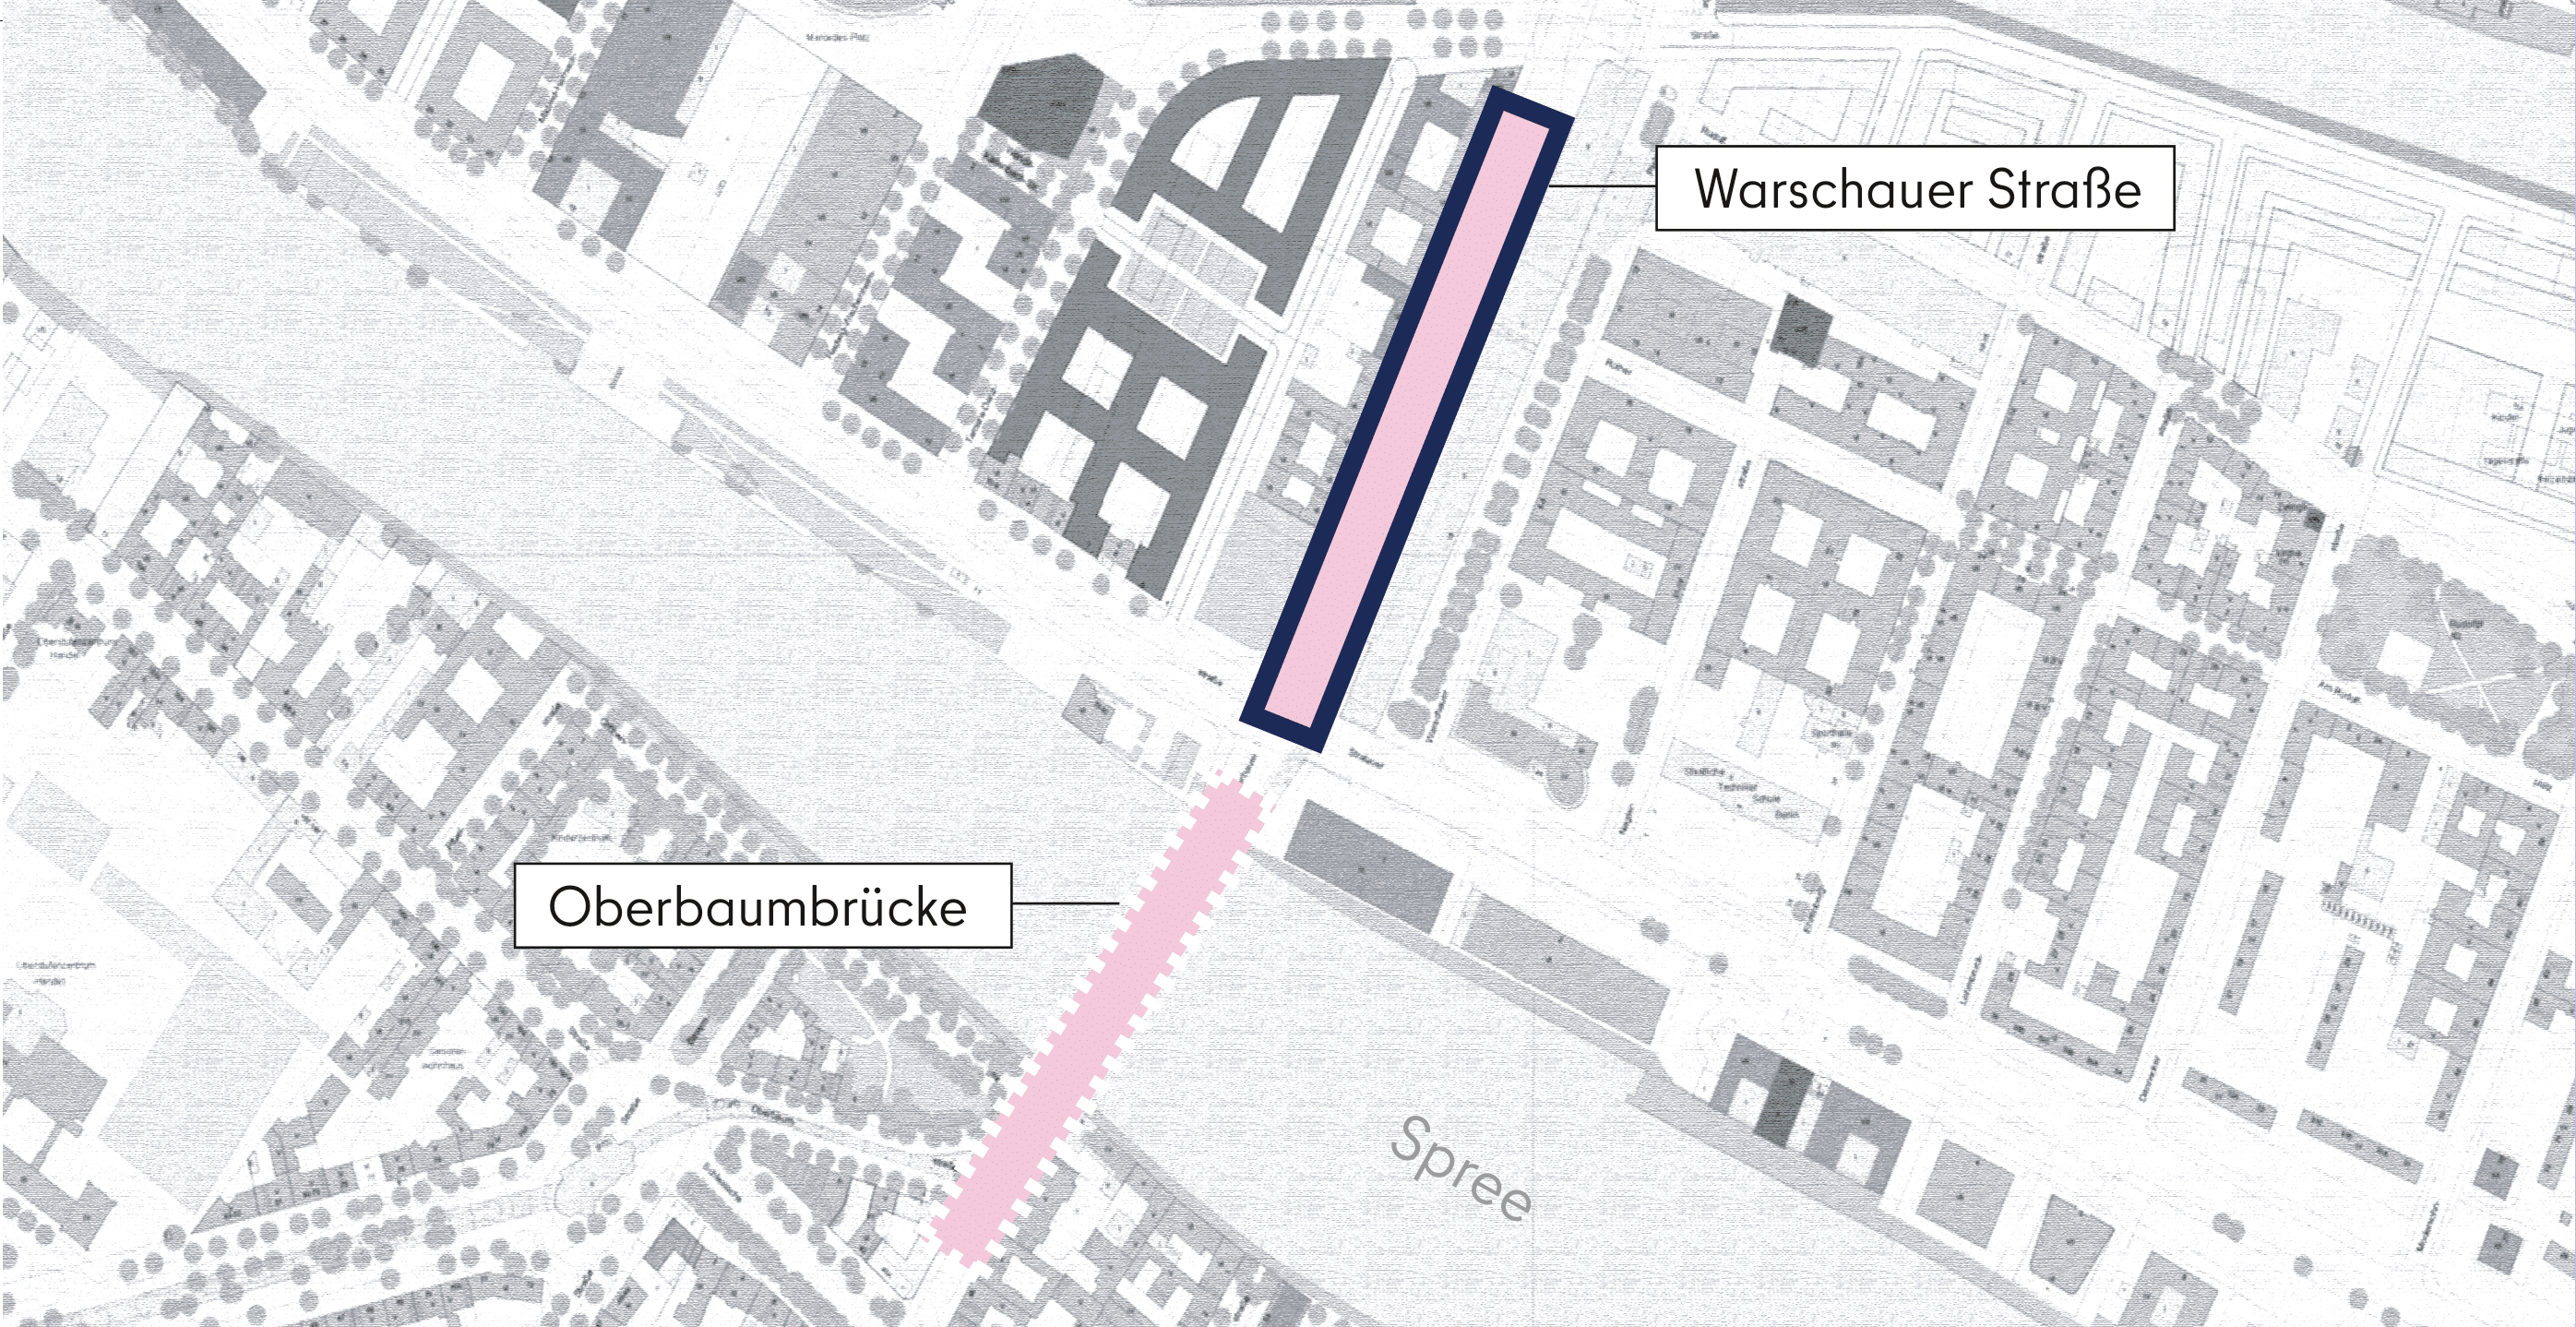 Dieses Bild zeigt eine grafische Darstellung des Abschnitts Warschauer Straße aus der Vogelperspektive